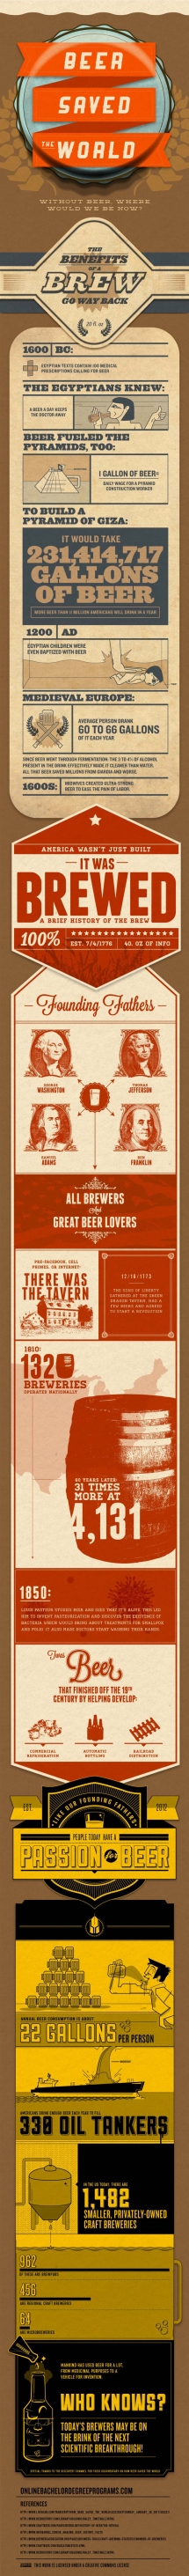 Beer history - Beer